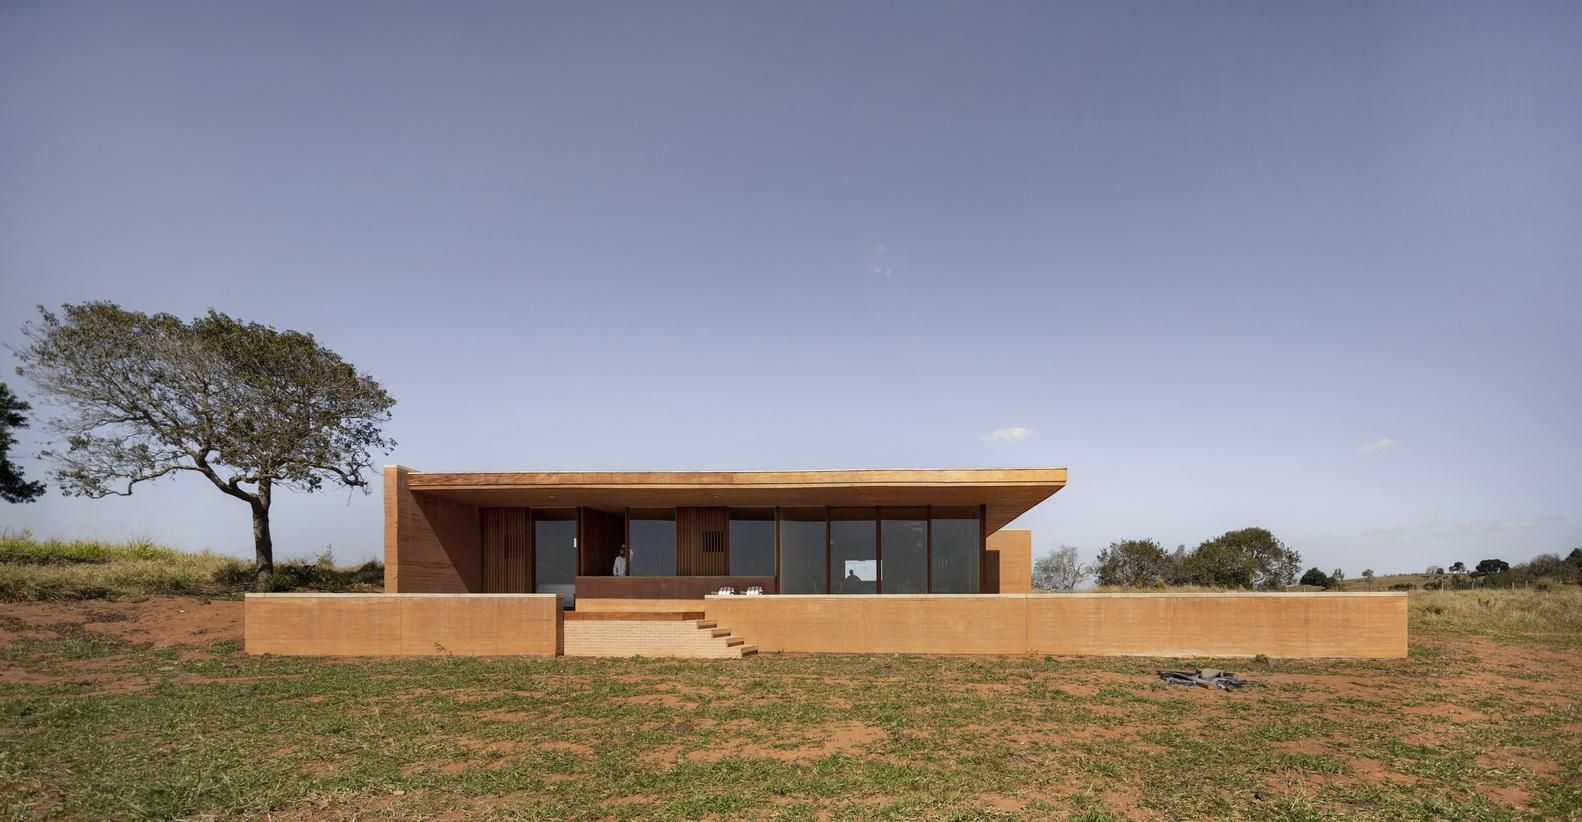 Захист від холодних вітрів: фото сучасного глиняного будинку в Бразилії